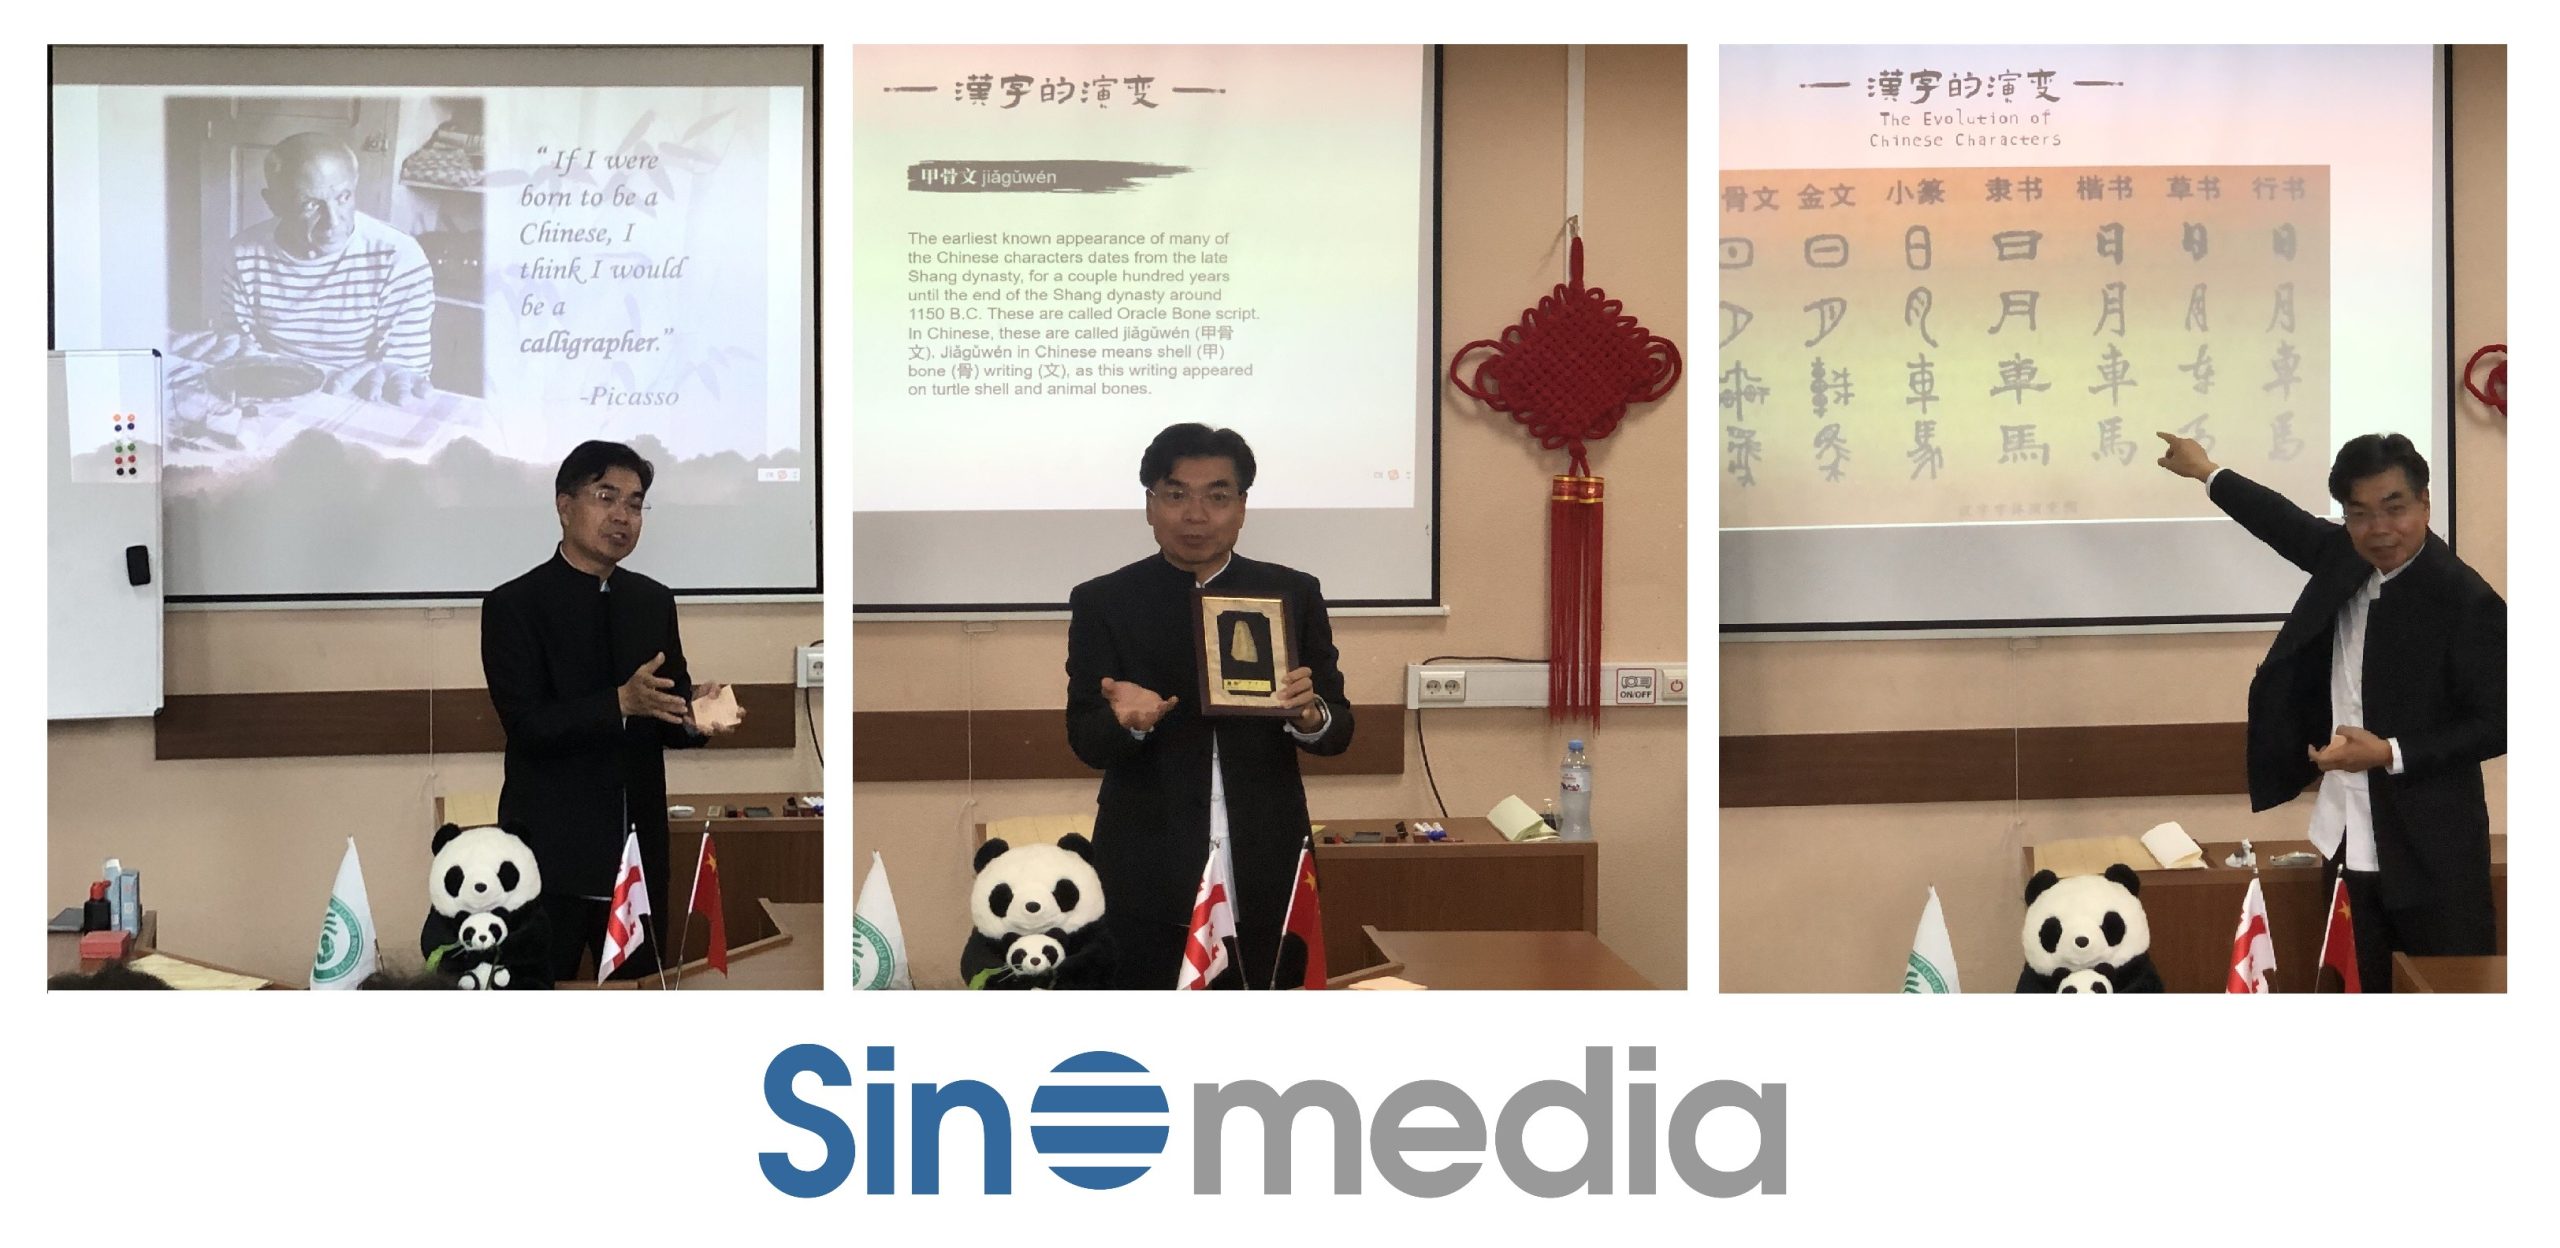 ჩინური კალიგრაფიის დემონსტრაცია თავისუფალი უნივერსიტეტის კონფუცის ინსტიტუტში